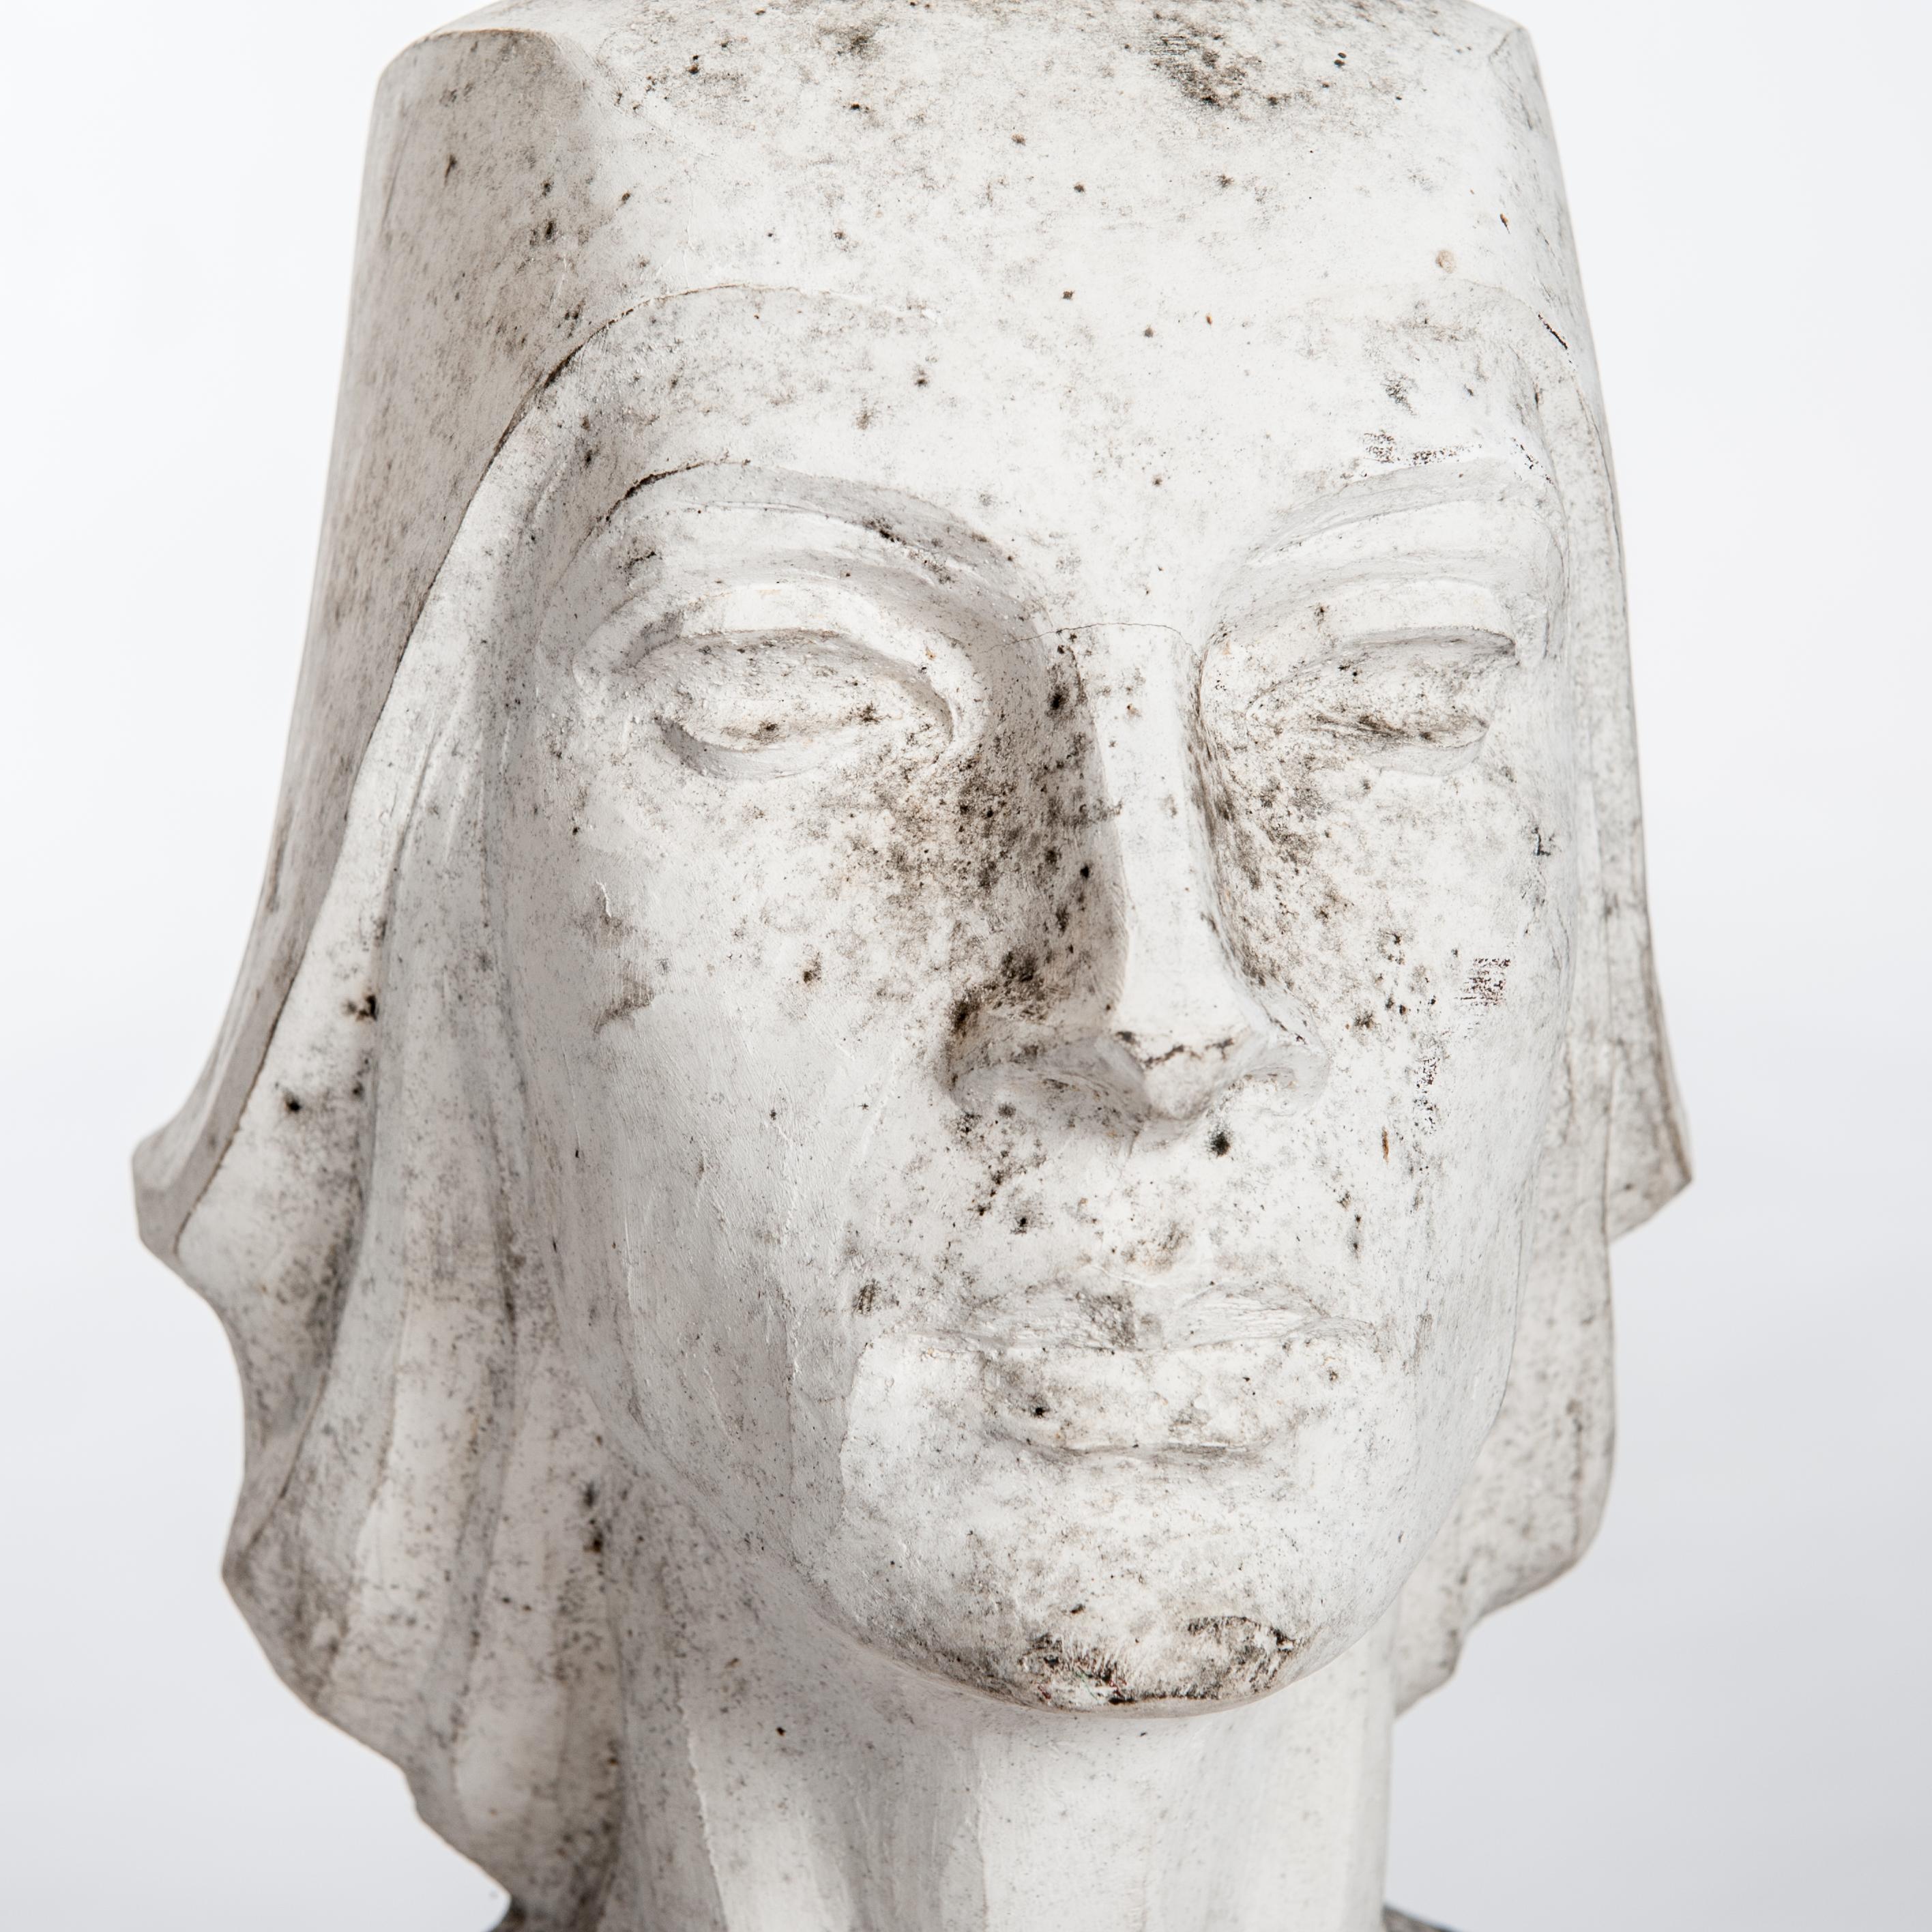 Moderne weibliche Gipsbüste / Skulptur weiß patiniert in grau und braun signiert Lucita Latorre 1991.
Die Büste zeigt ein schlichtes und geradliniges Design, das an die Zeit des Art déco erinnert.
Geboren 1941 in Tudela / Spanien - Gestorben 2014 in